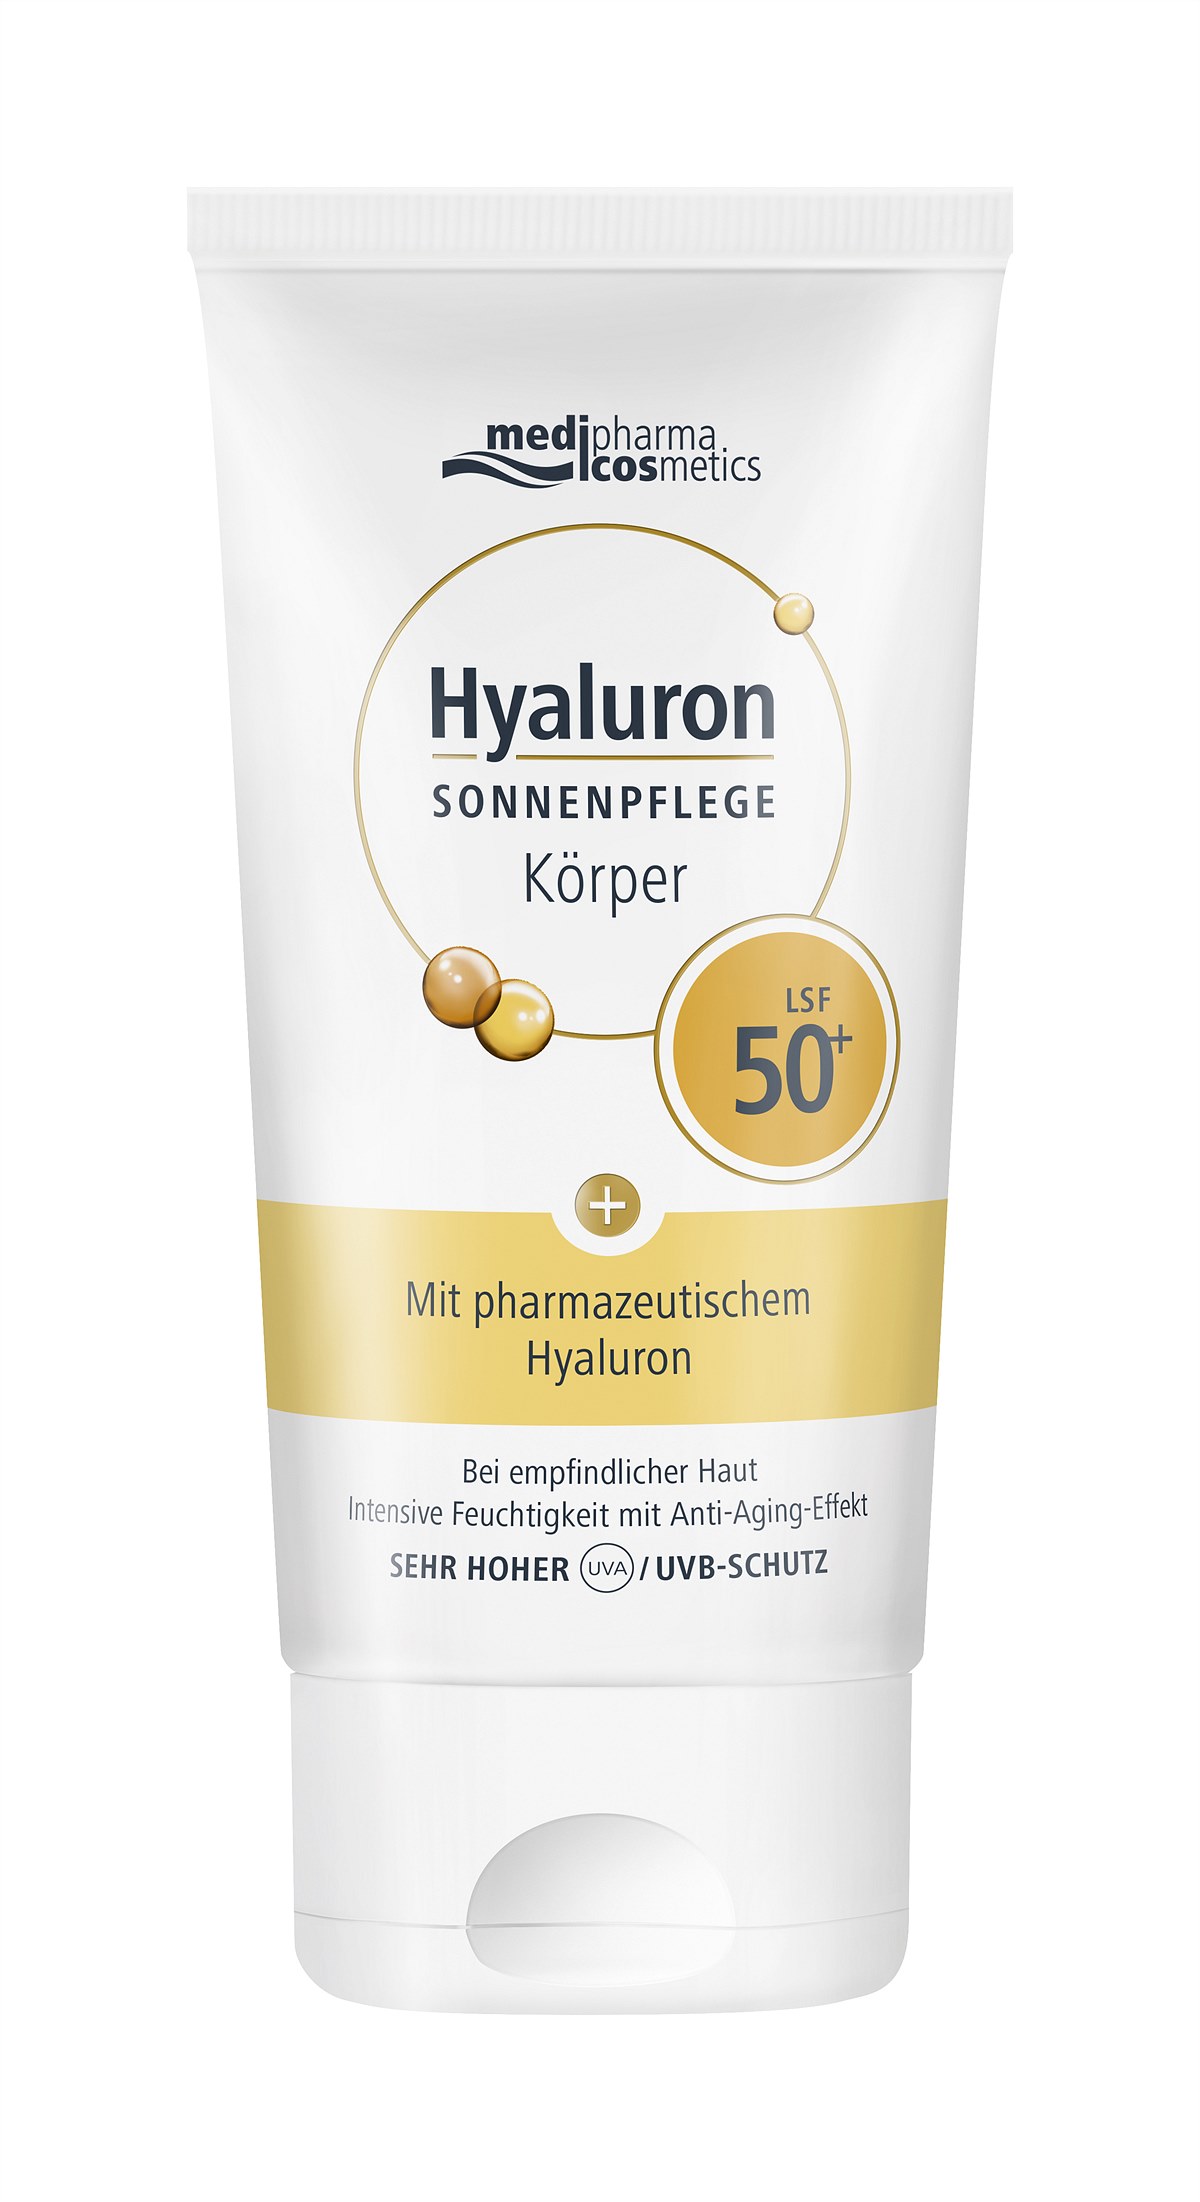 medipharma cosmetics -  Hyaluron SONNENPFLEGE Körper LSF 50+